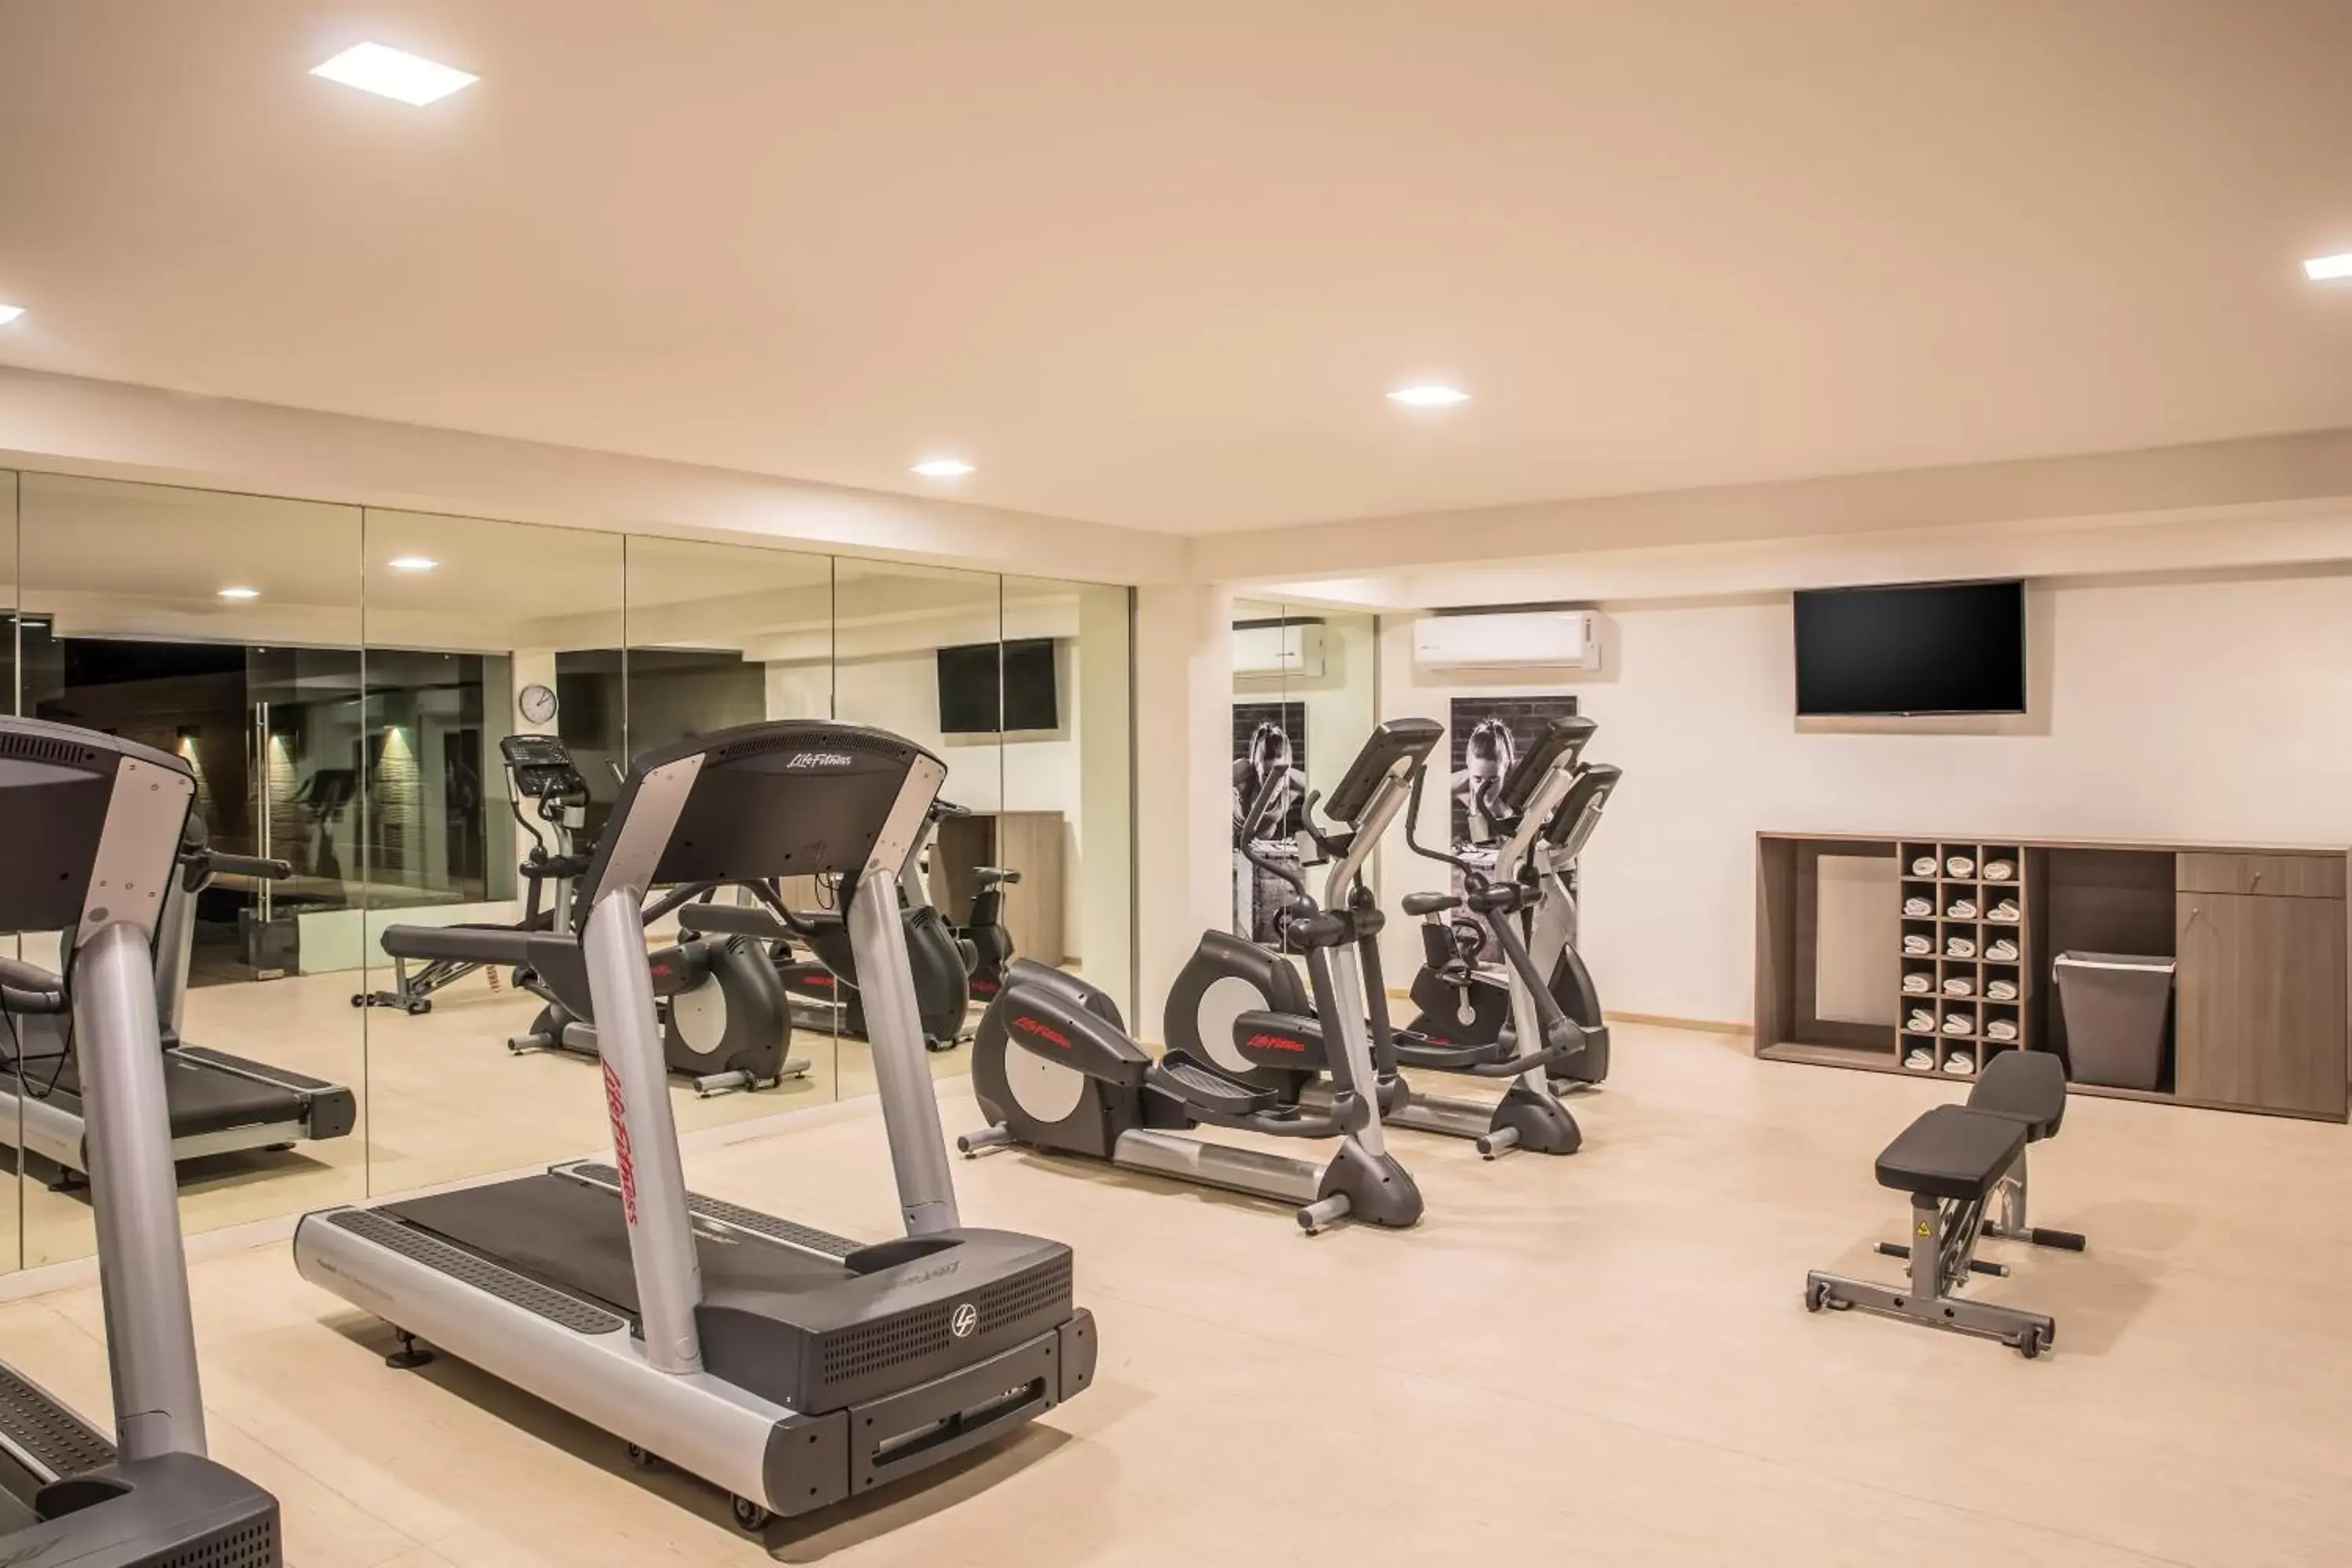 Fitness centre/facilities, Fitness Center/Facilities in Fiesta Inn Los Mochis